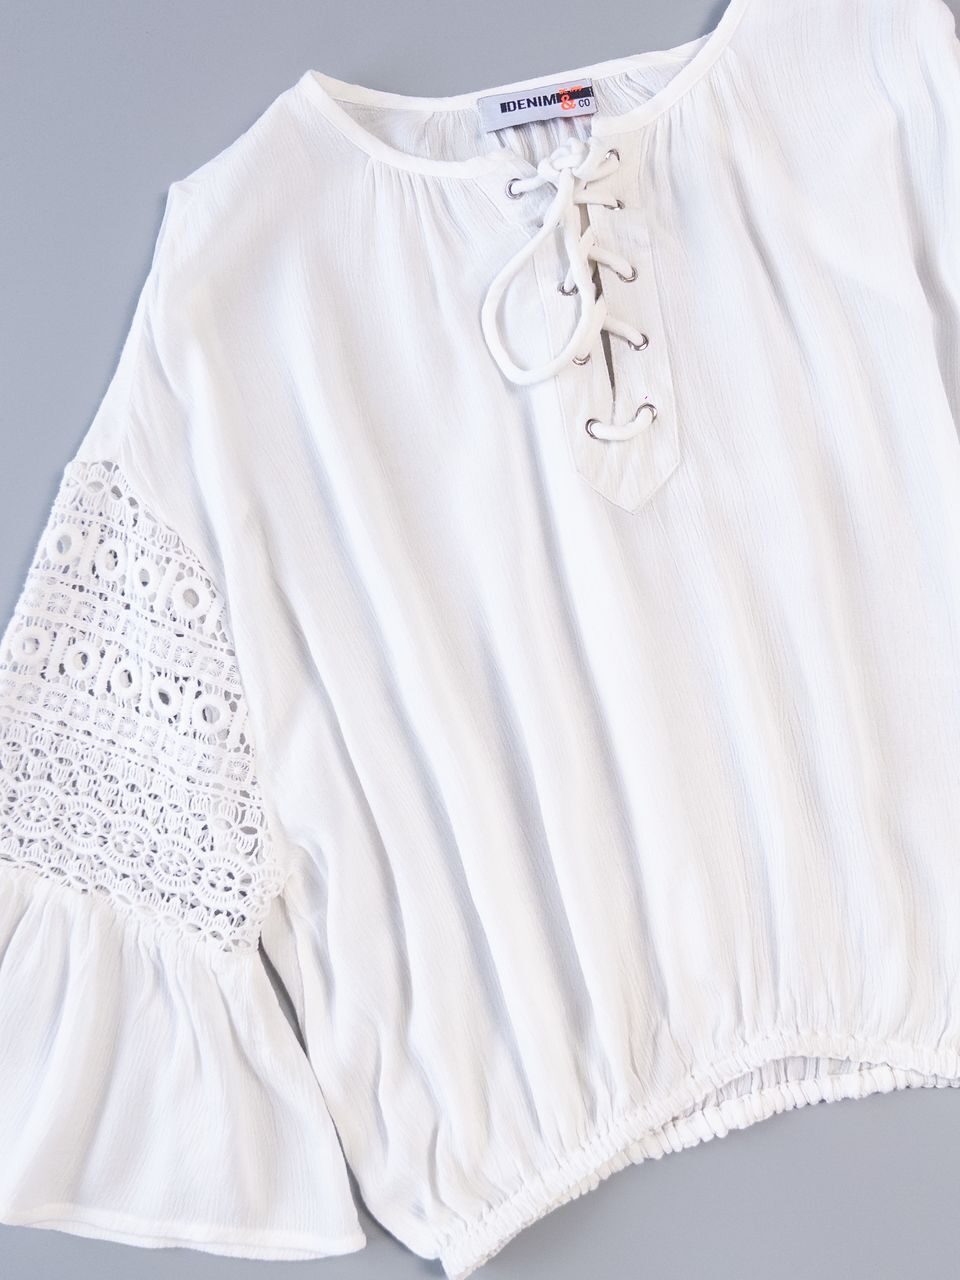 Блуза укороченная цвет белый с резинкой внизу размер EUR L (rus 48) KIABI